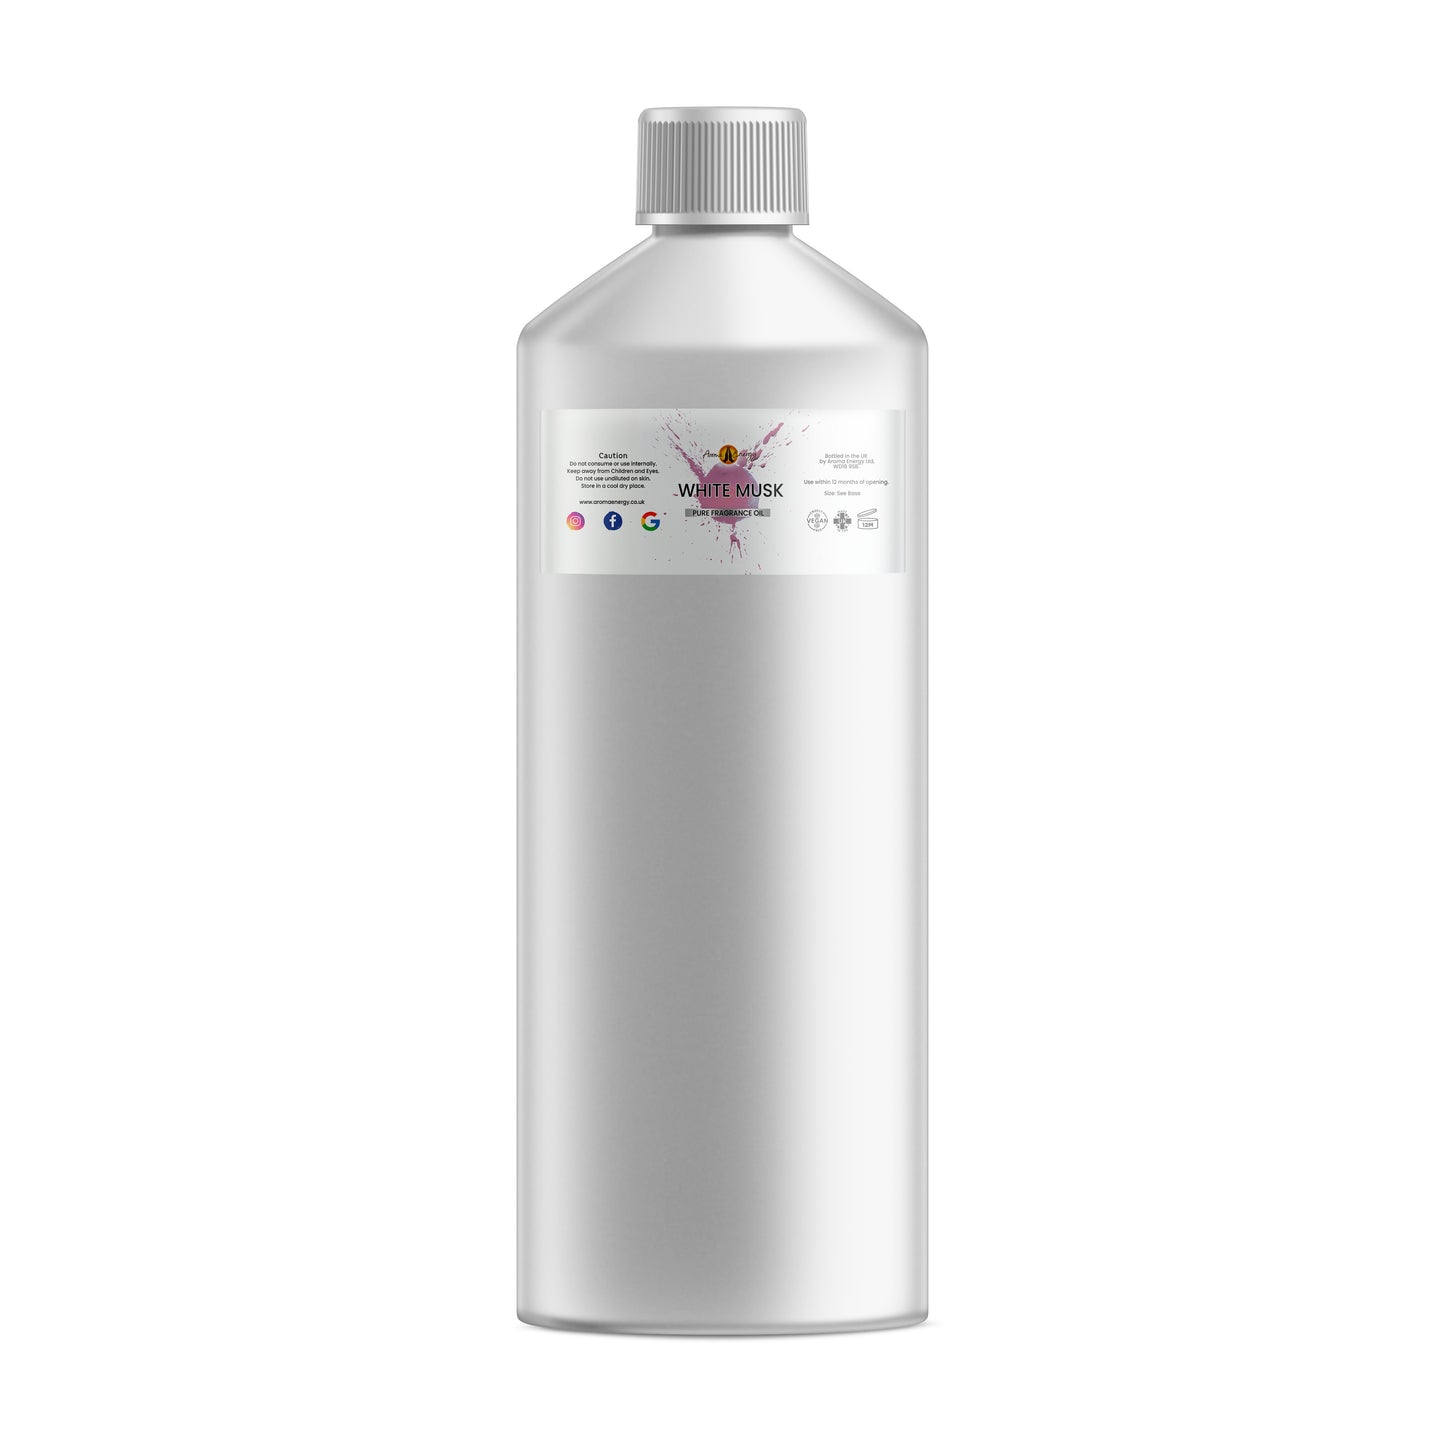 White Musk Fragrance Oil - Wholesale - Aroma Energy